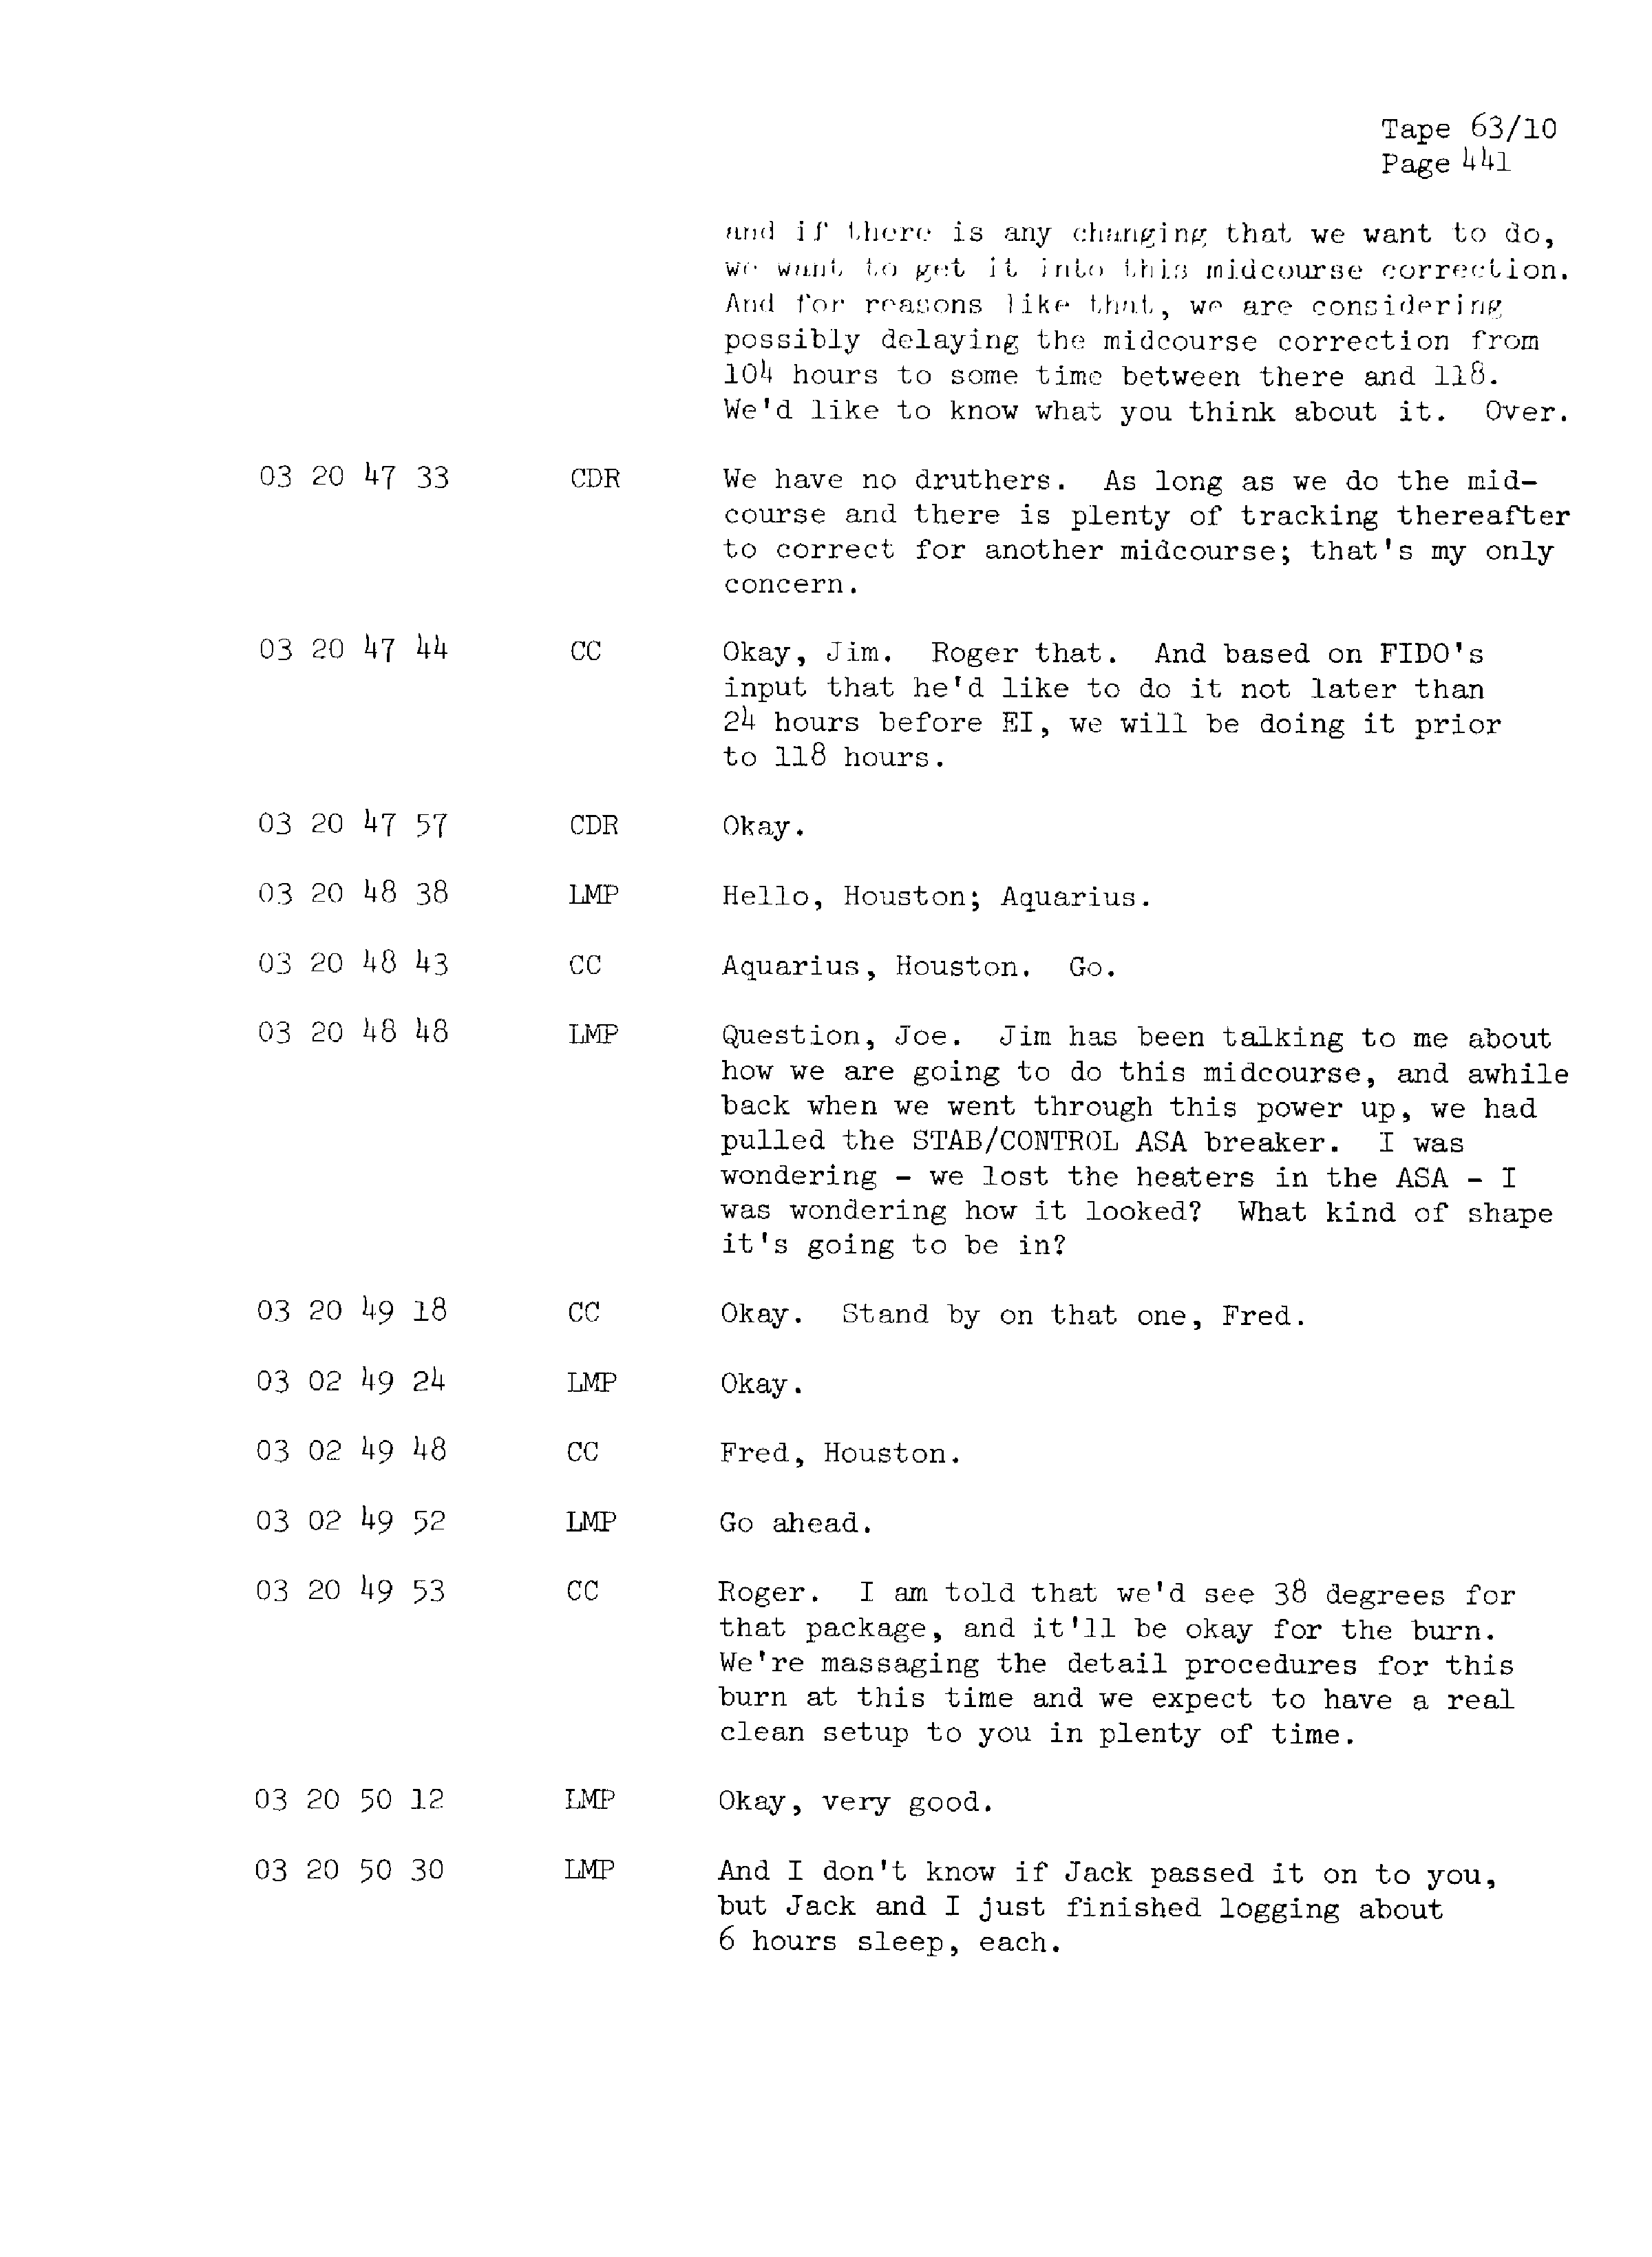 Page 448 of Apollo 13’s original transcript